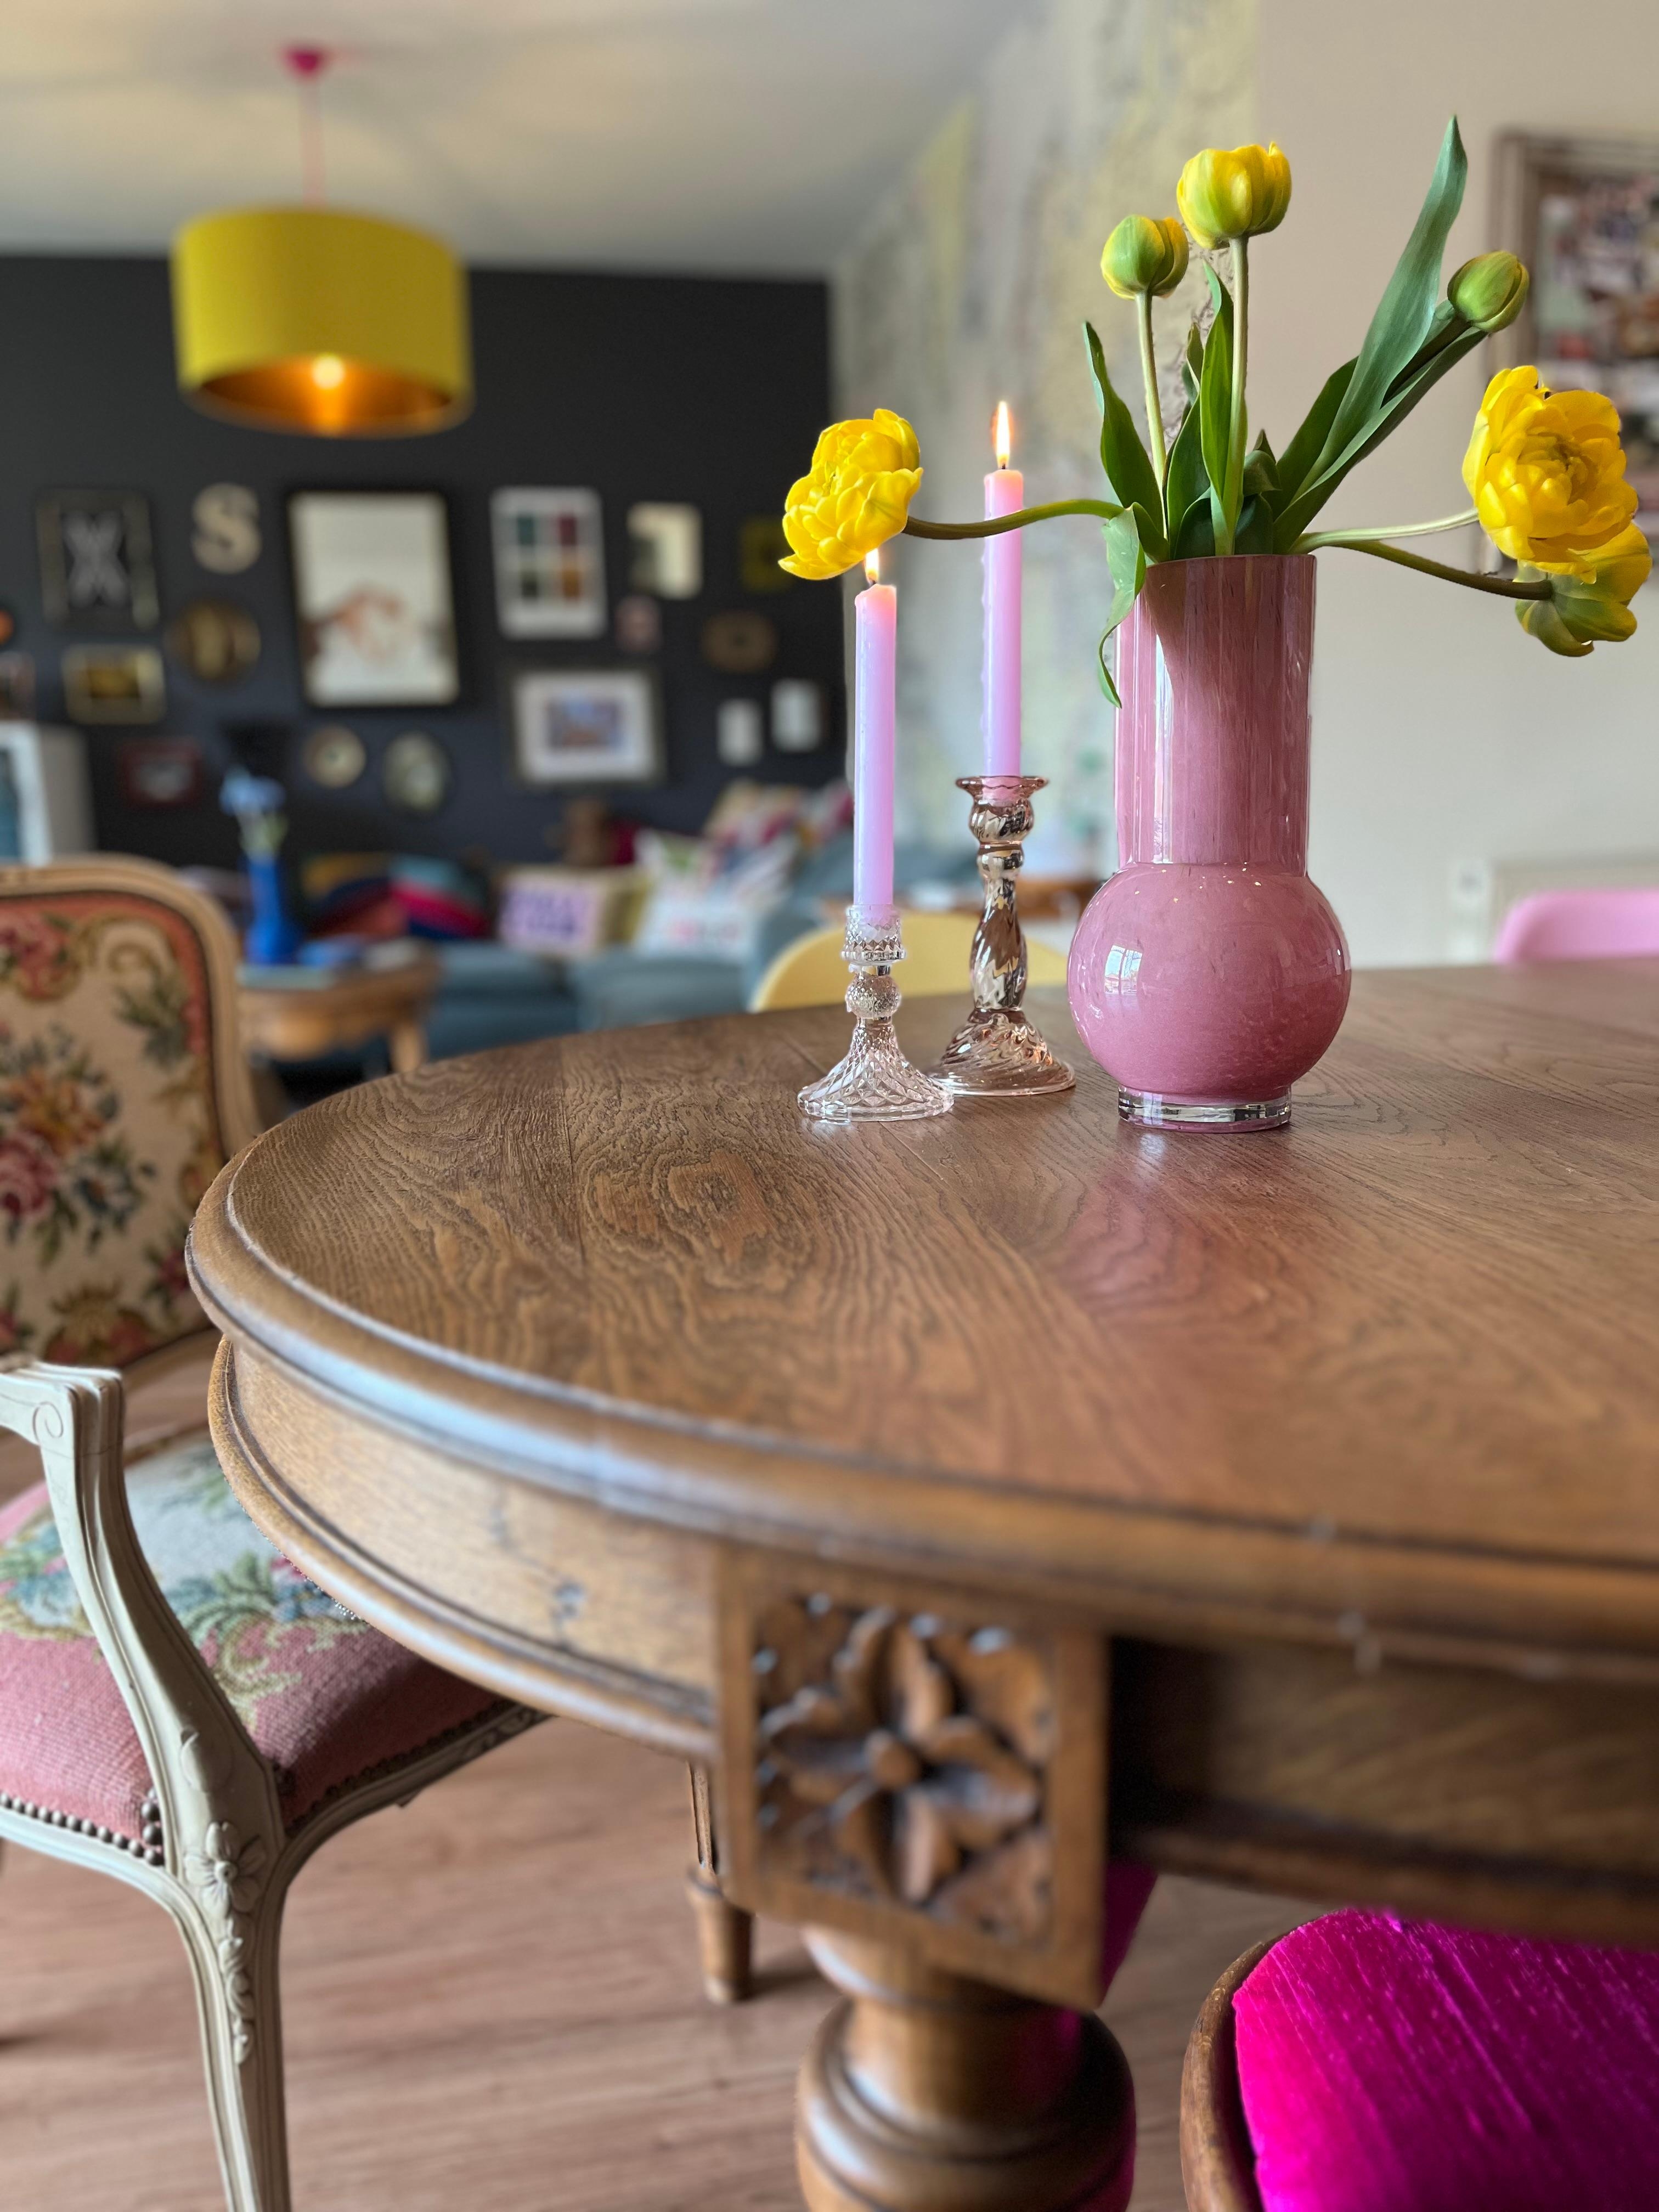 Der alte Tisch - ein gebrauchter Glücksfund“ fügt sich perfekt ins bunte Wohnzimmer-Sammelsurium 😊 #esstisch #essplatz #vintagestyle